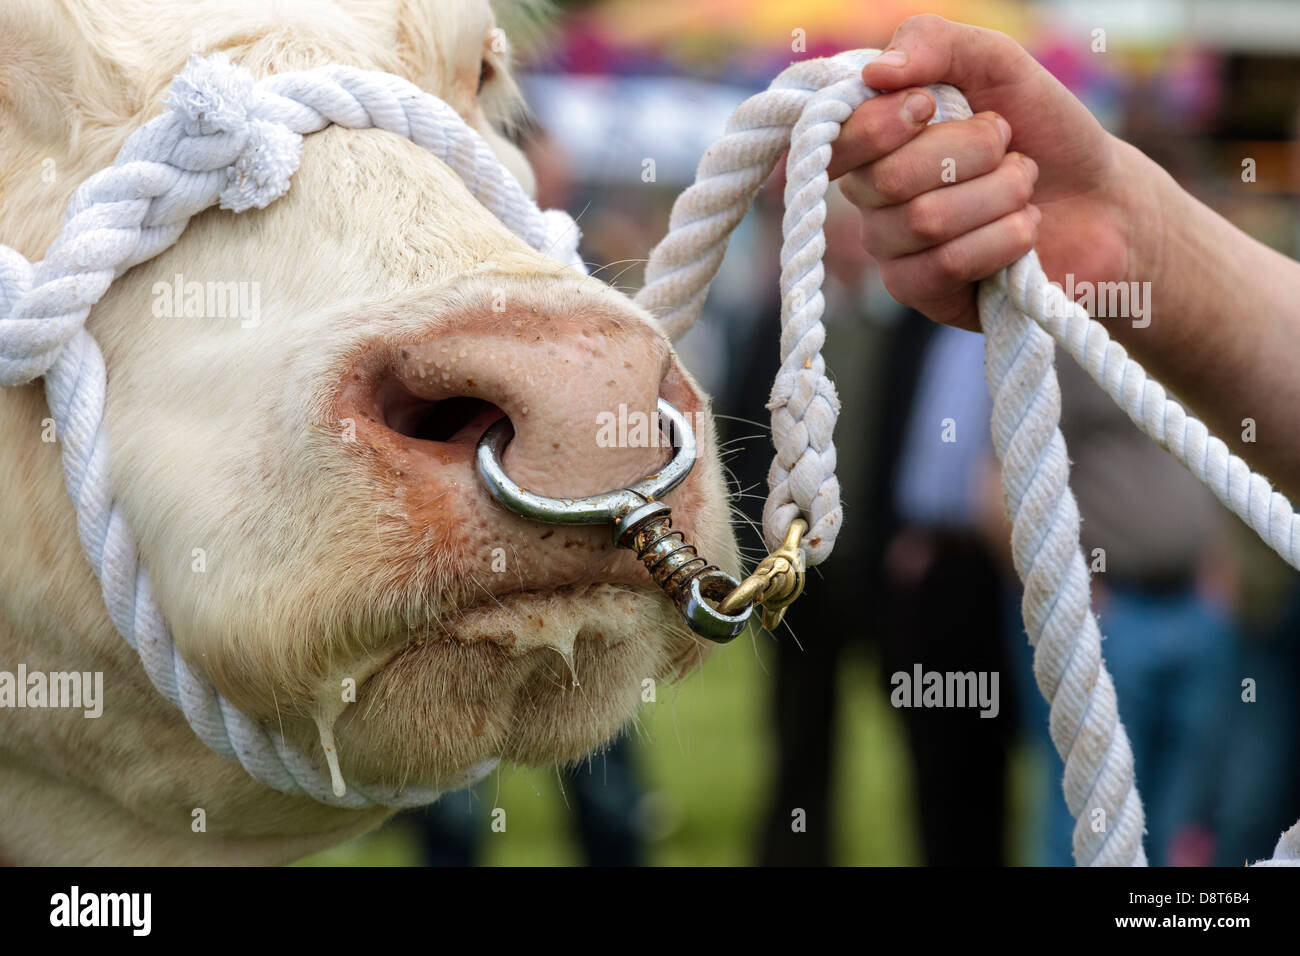 Taureau Charolais menée par une corde et un anneau dans le nez, Ecosse, Royaume-Uni Banque D'Images